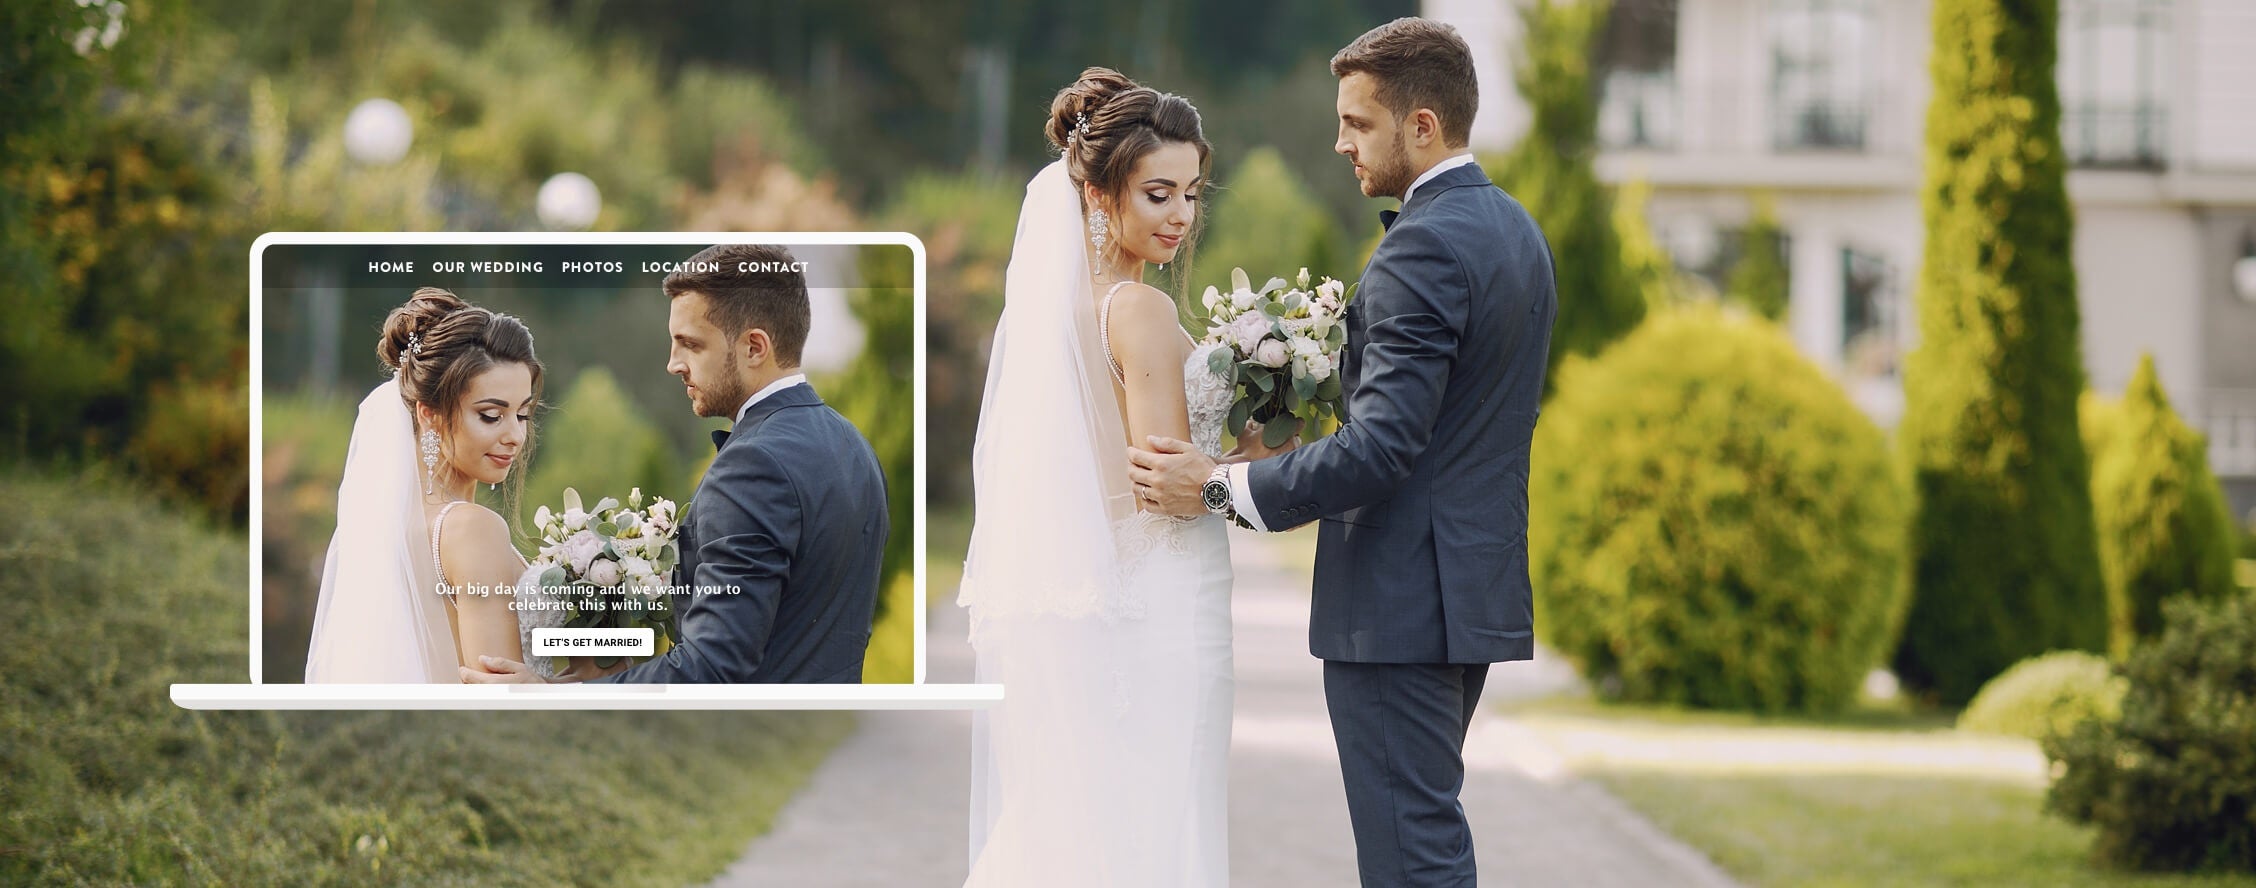 Braut und Bräutigam posieren gemeinsam für ihre Hochzeitsfotos, daneben ein Screenshot ihrer Hochzeitswebsite